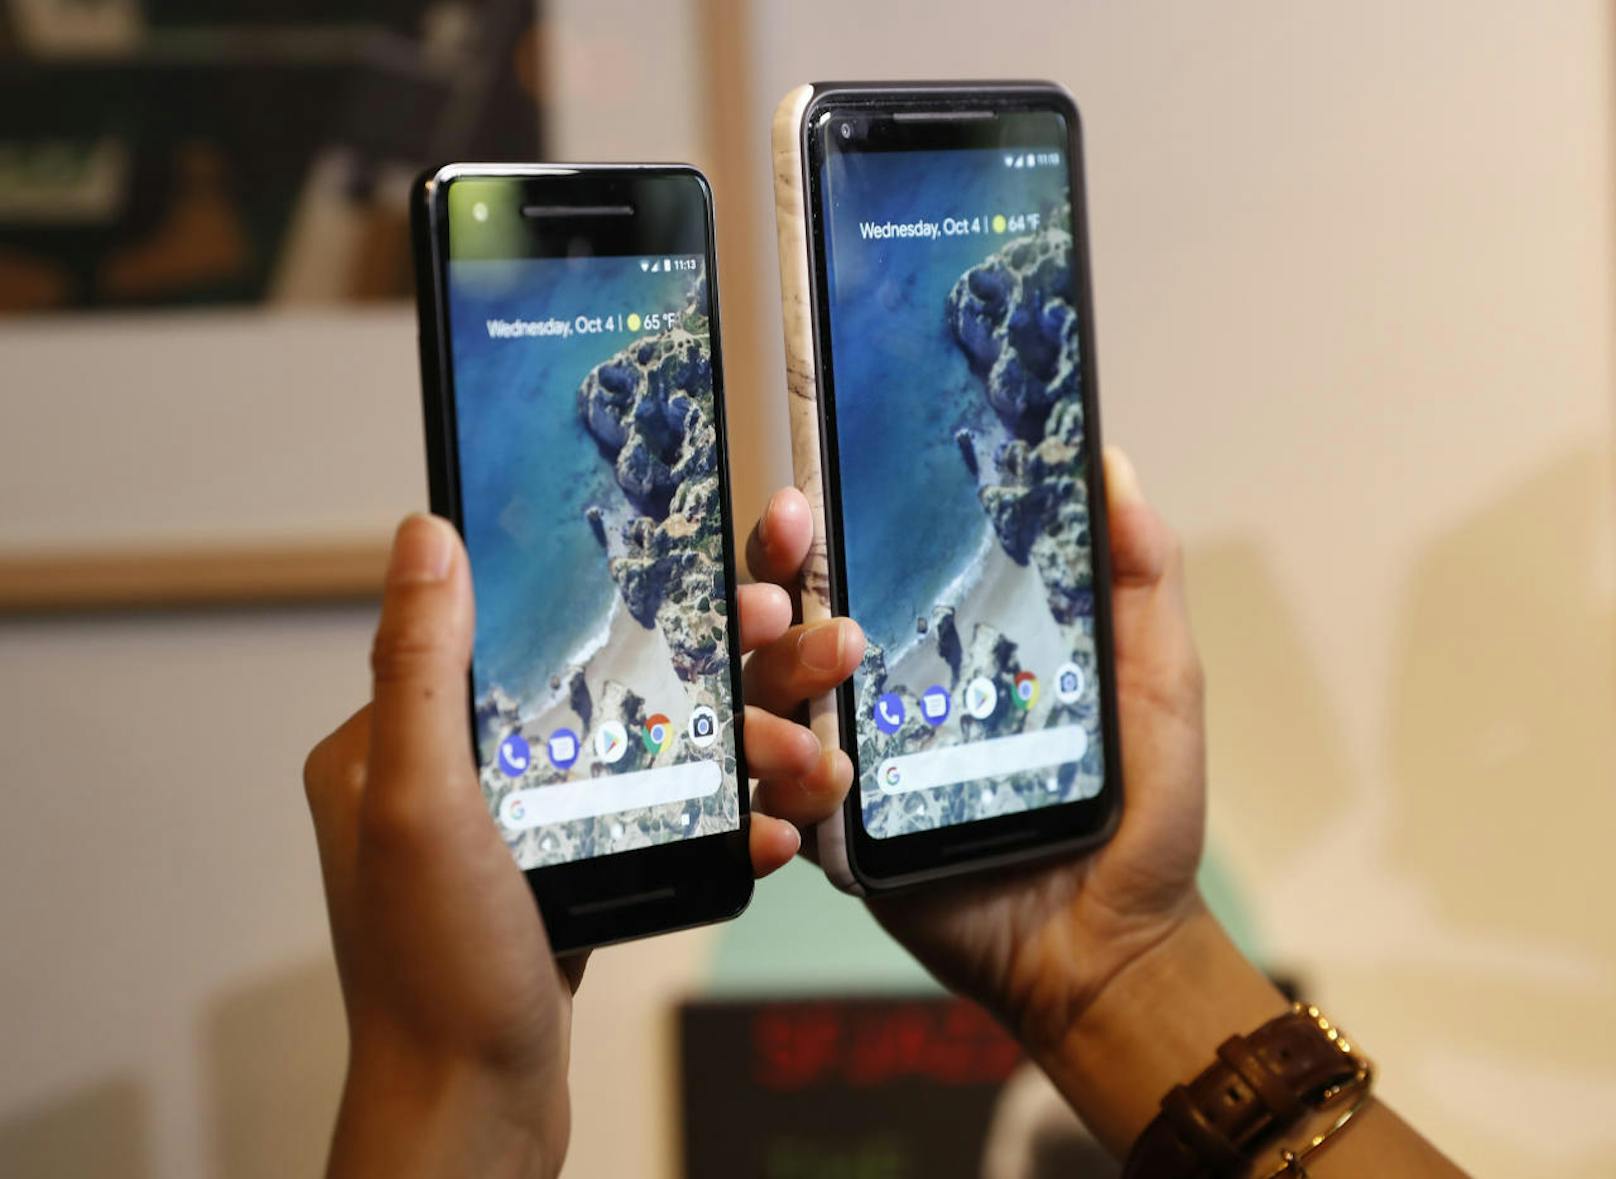 <b>Google Pixel 2:</b> Google untermauert seine Ambitionen im Smartphone-Geschäft mit neuen Modellen, die es mit teuren Konkurrenzgeräten von Apple und Samsung aufnehmen sollen. Ein Jahr nach der Lancierung der ersten Pixel-Smartphones stellte der Internet-Konzern ein Pixel 2 sowie ein größeres Modell, das Pixel 2 XL mit einem 6-Zoll-Bildschirm, vor. In Österreich allerdings noch nicht erhältlich. <a href="https://www.heute.at/digital/multimedia/story/Google-Pixel-2-sprengt-die-Kamera-Bestenliste-51611563">"Heute" titelte: Google Pixel 2 sprengt die Kamera-Bestenliste</a>